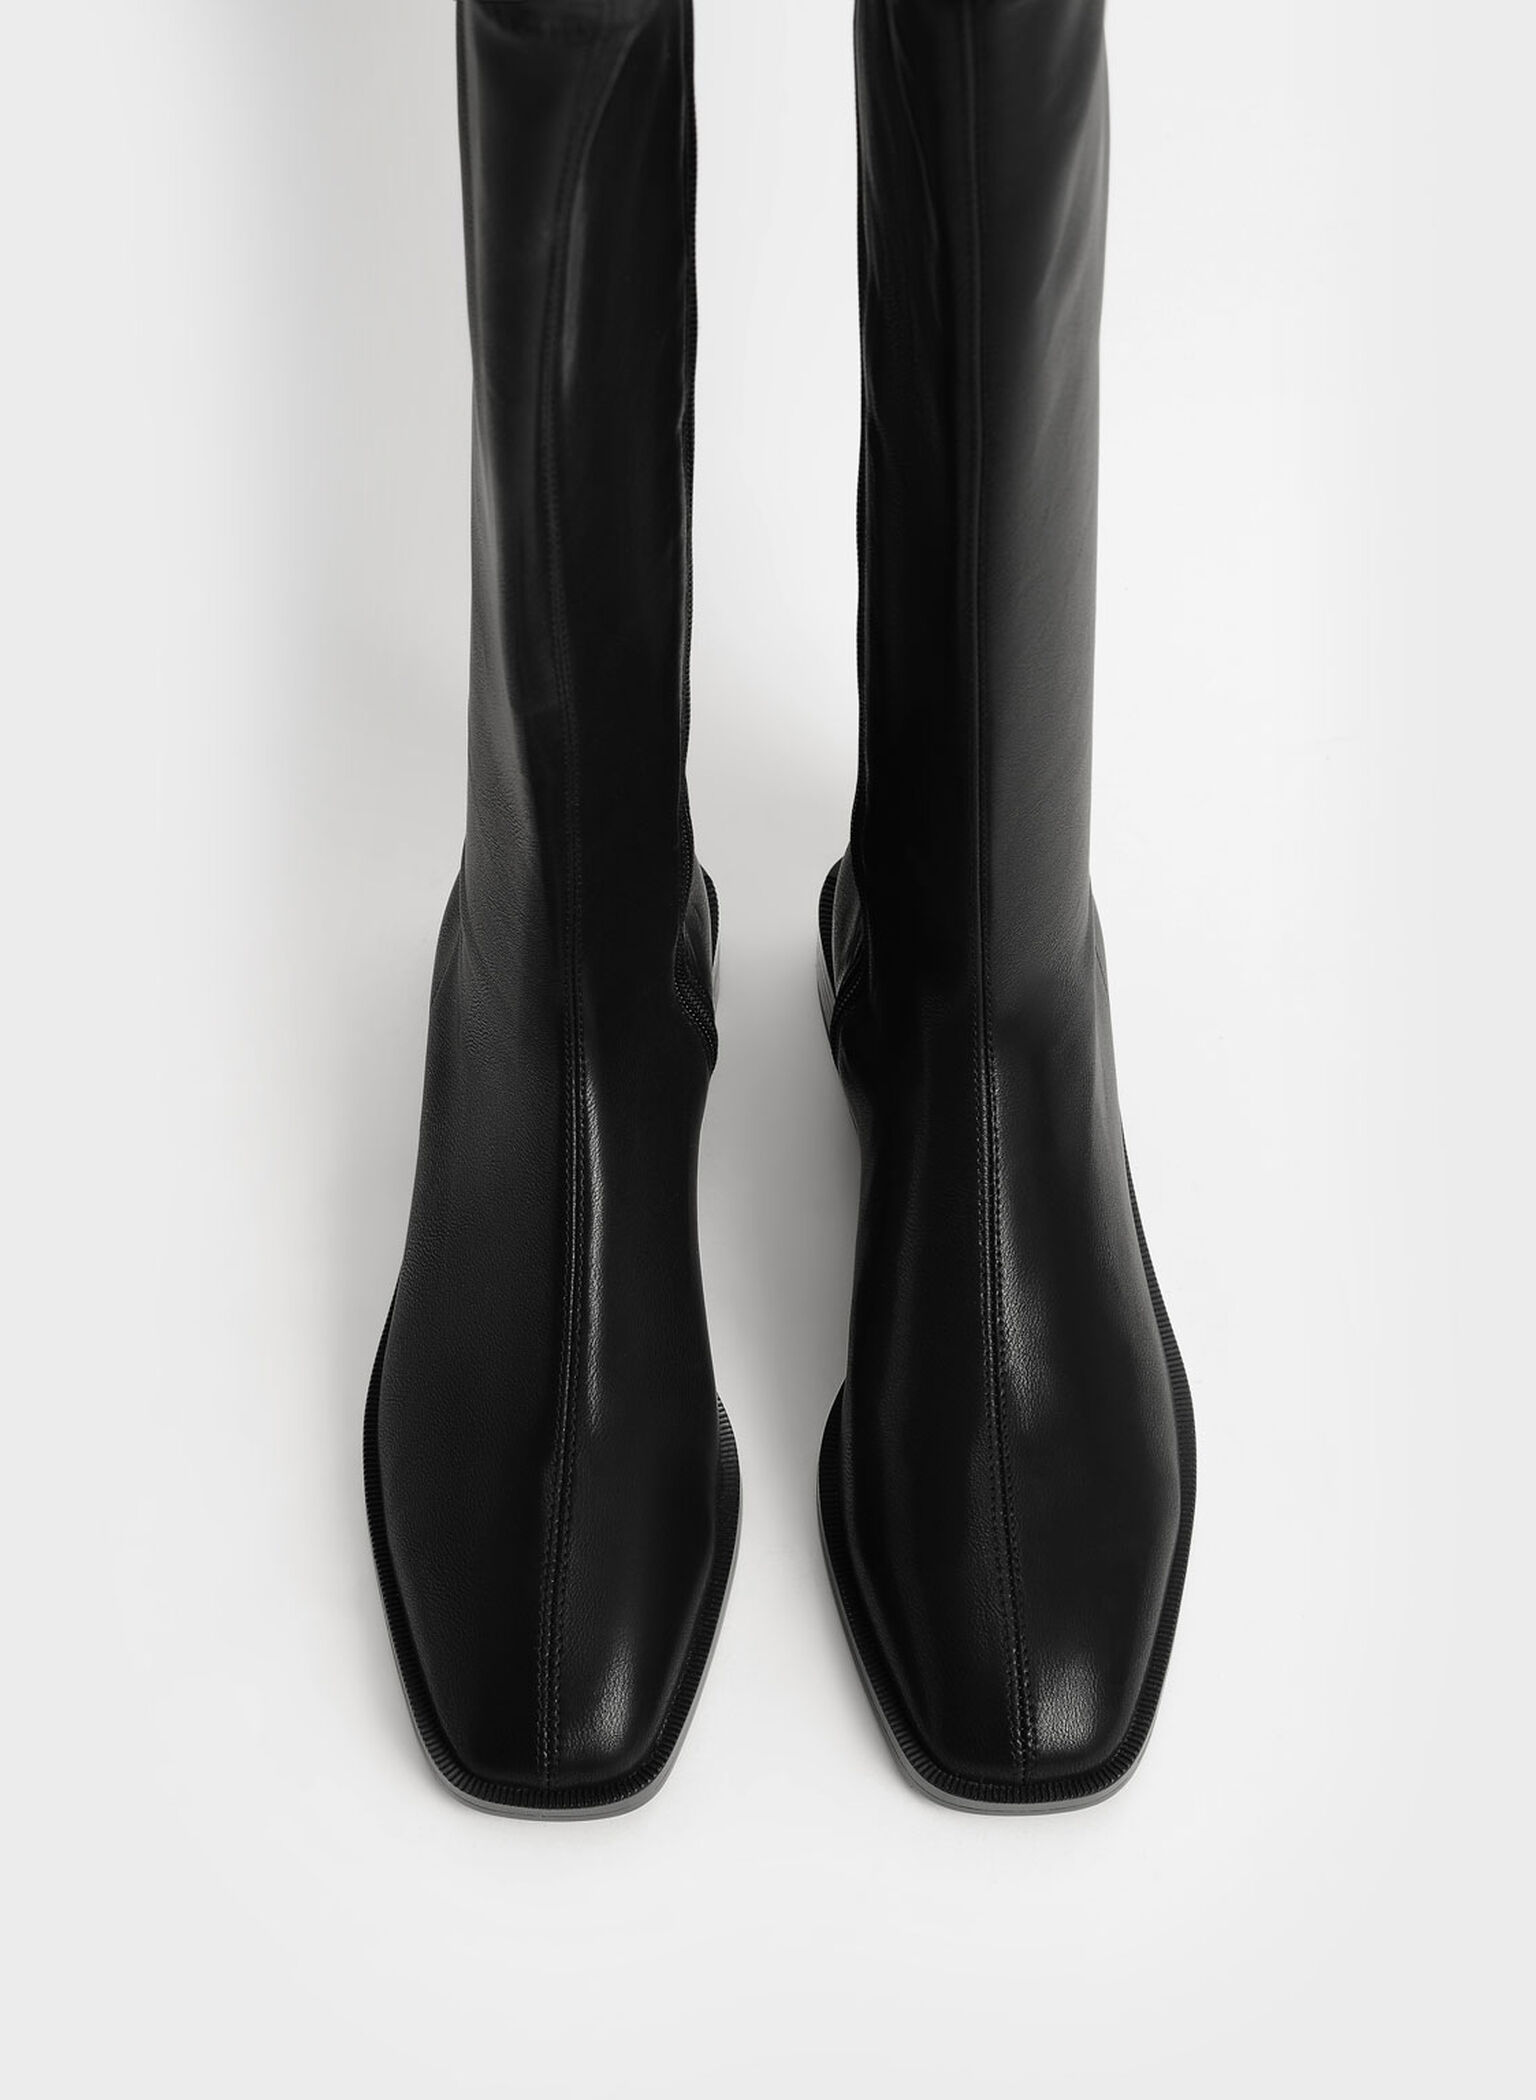 Knee High Flat Boots, Black, hi-res